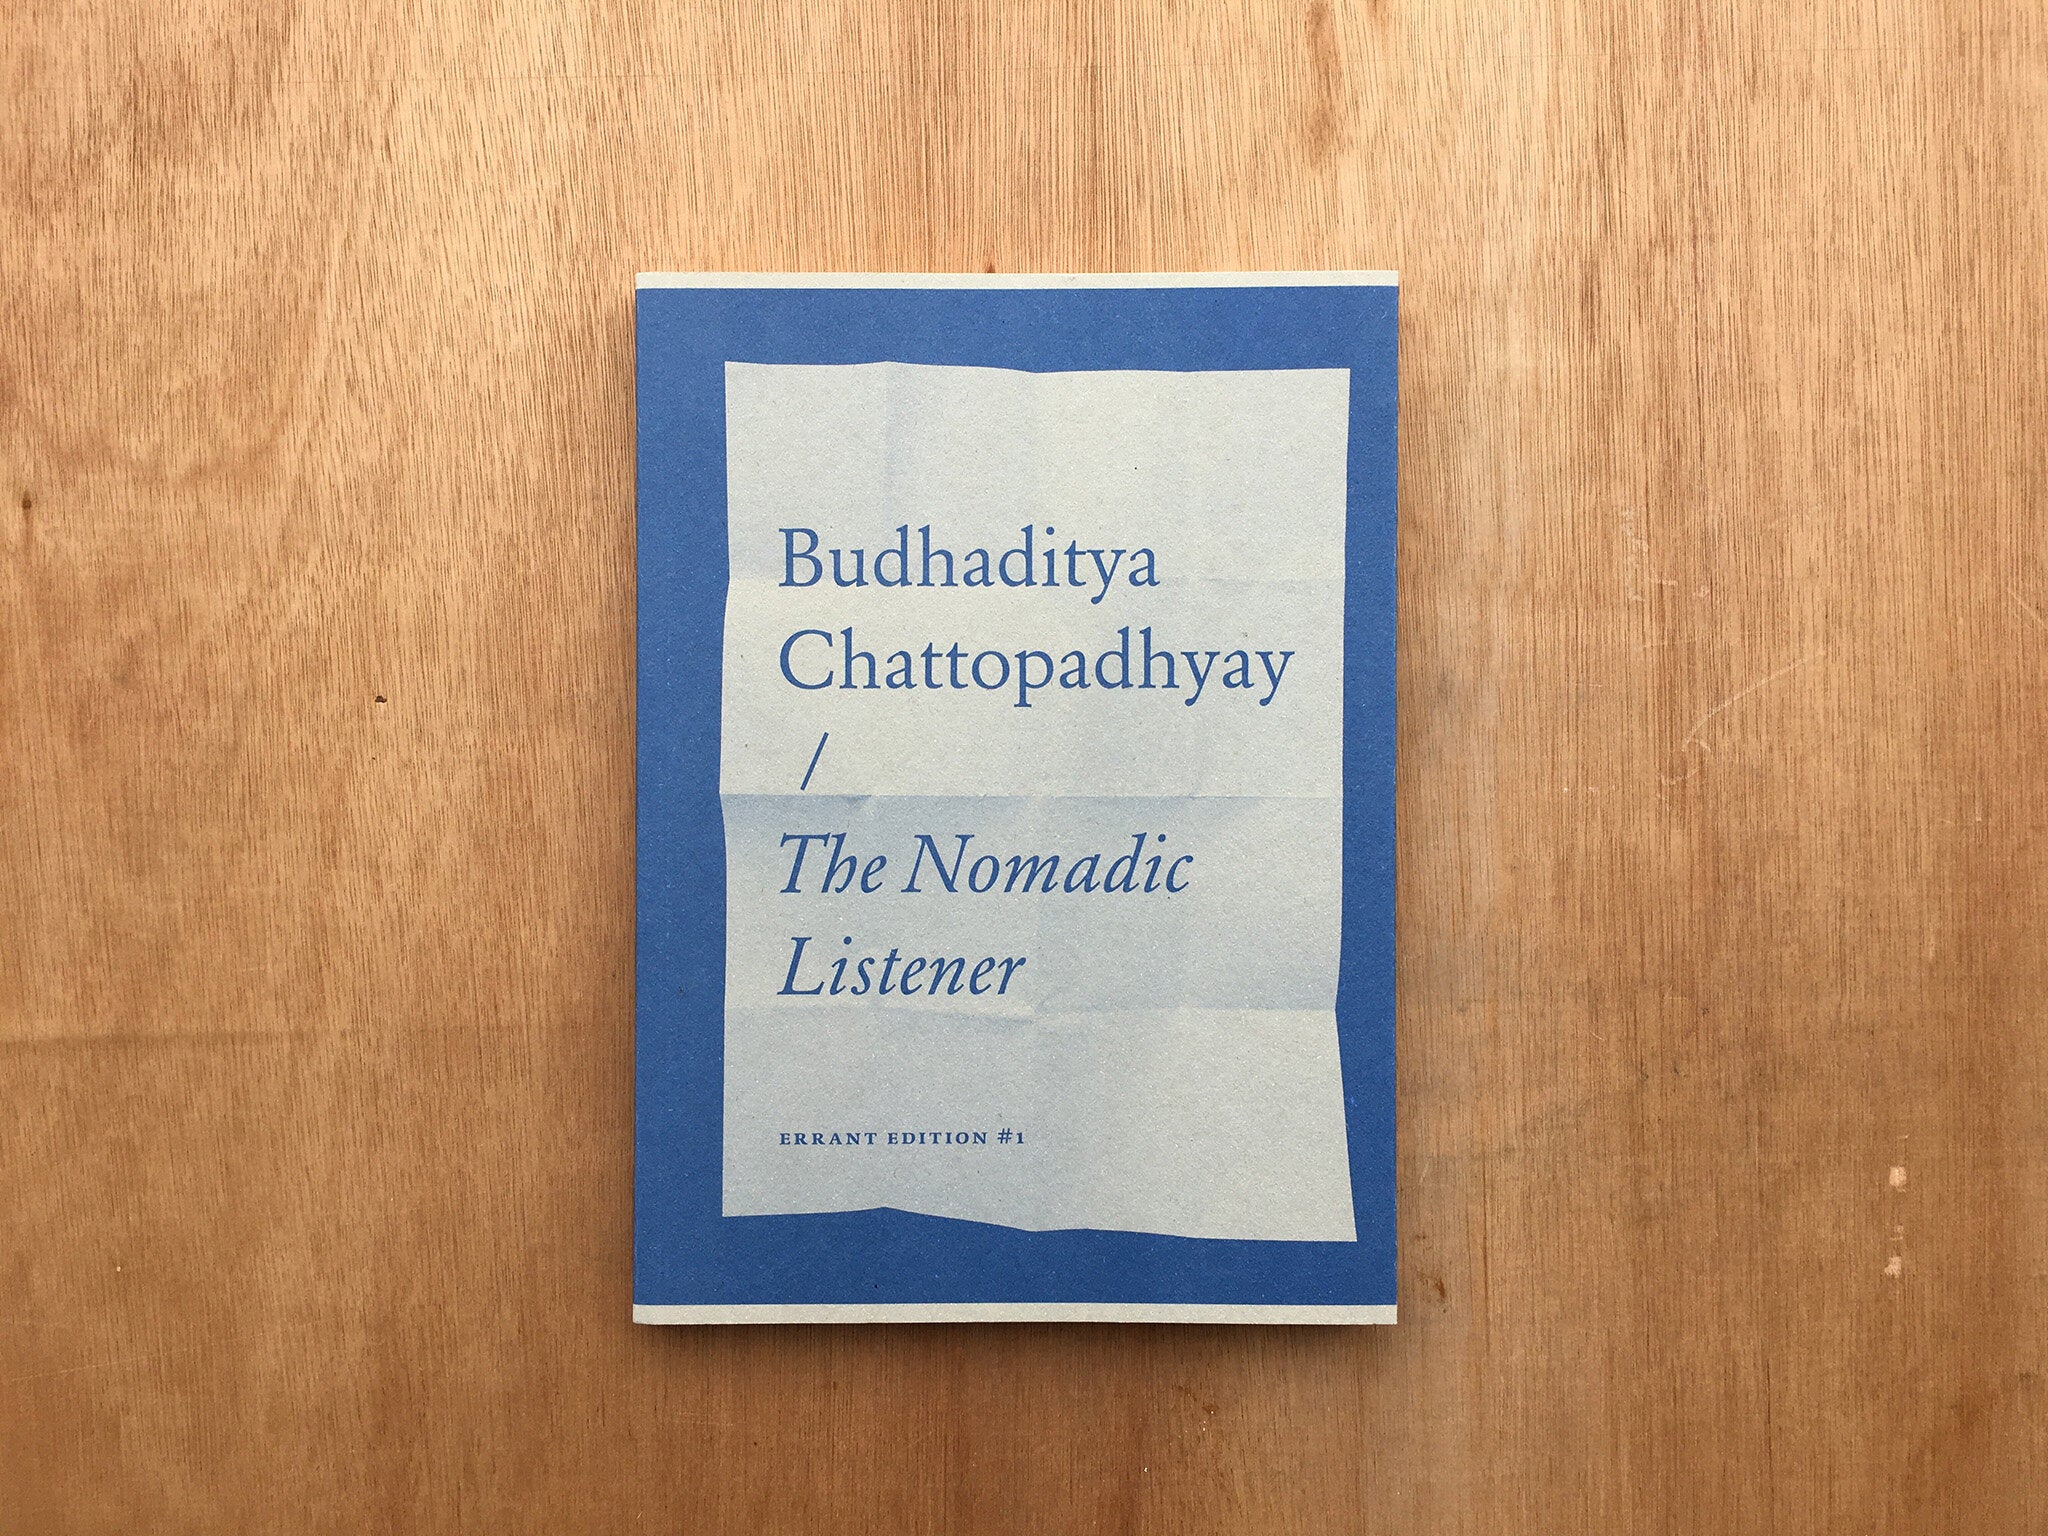 THE NOMADIC LISTENER by Budhaditya Chattopadhyay